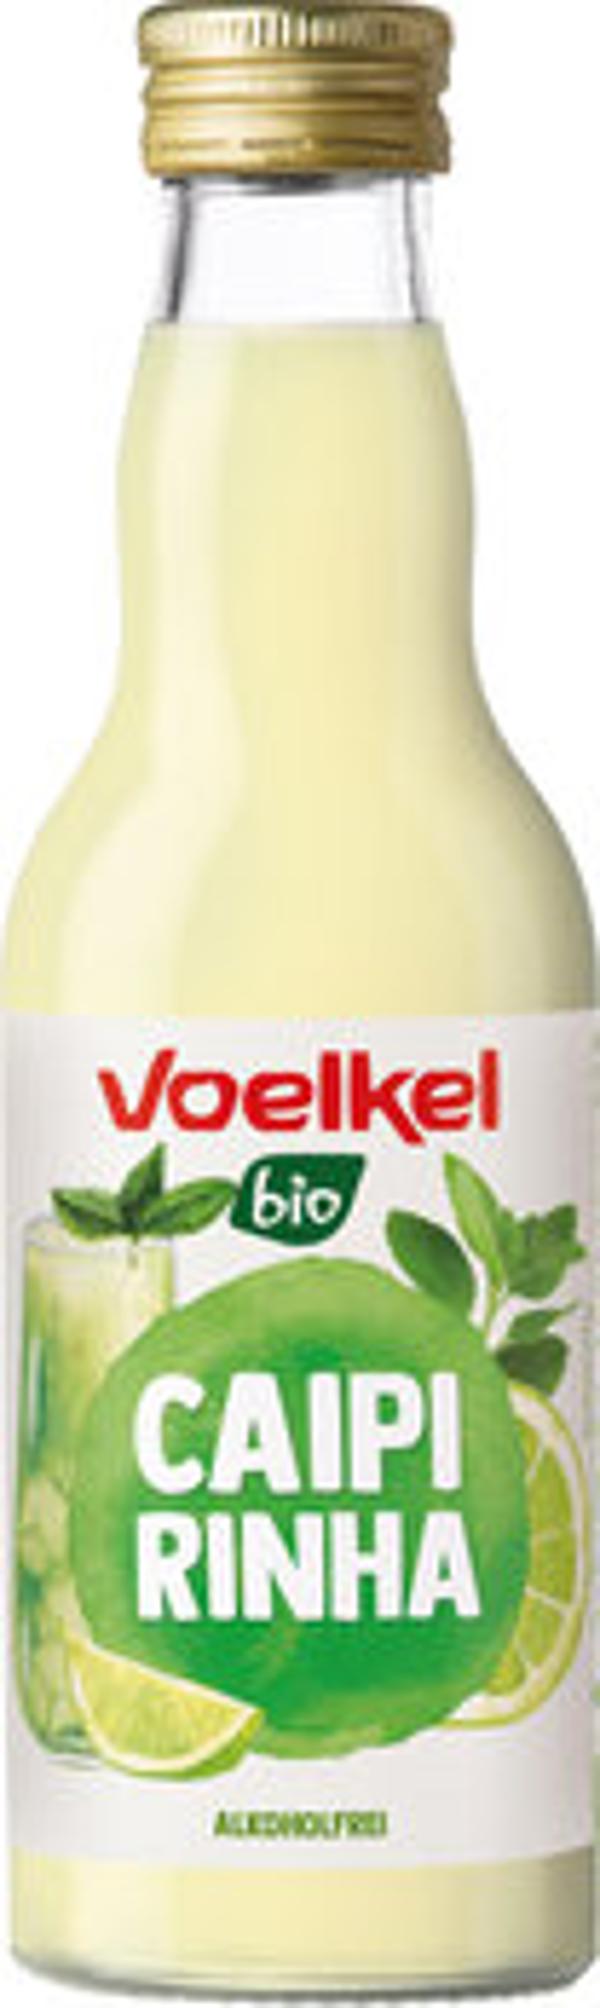 Produktfoto zu Voelkel Cocktail Caipirinha 0,2l